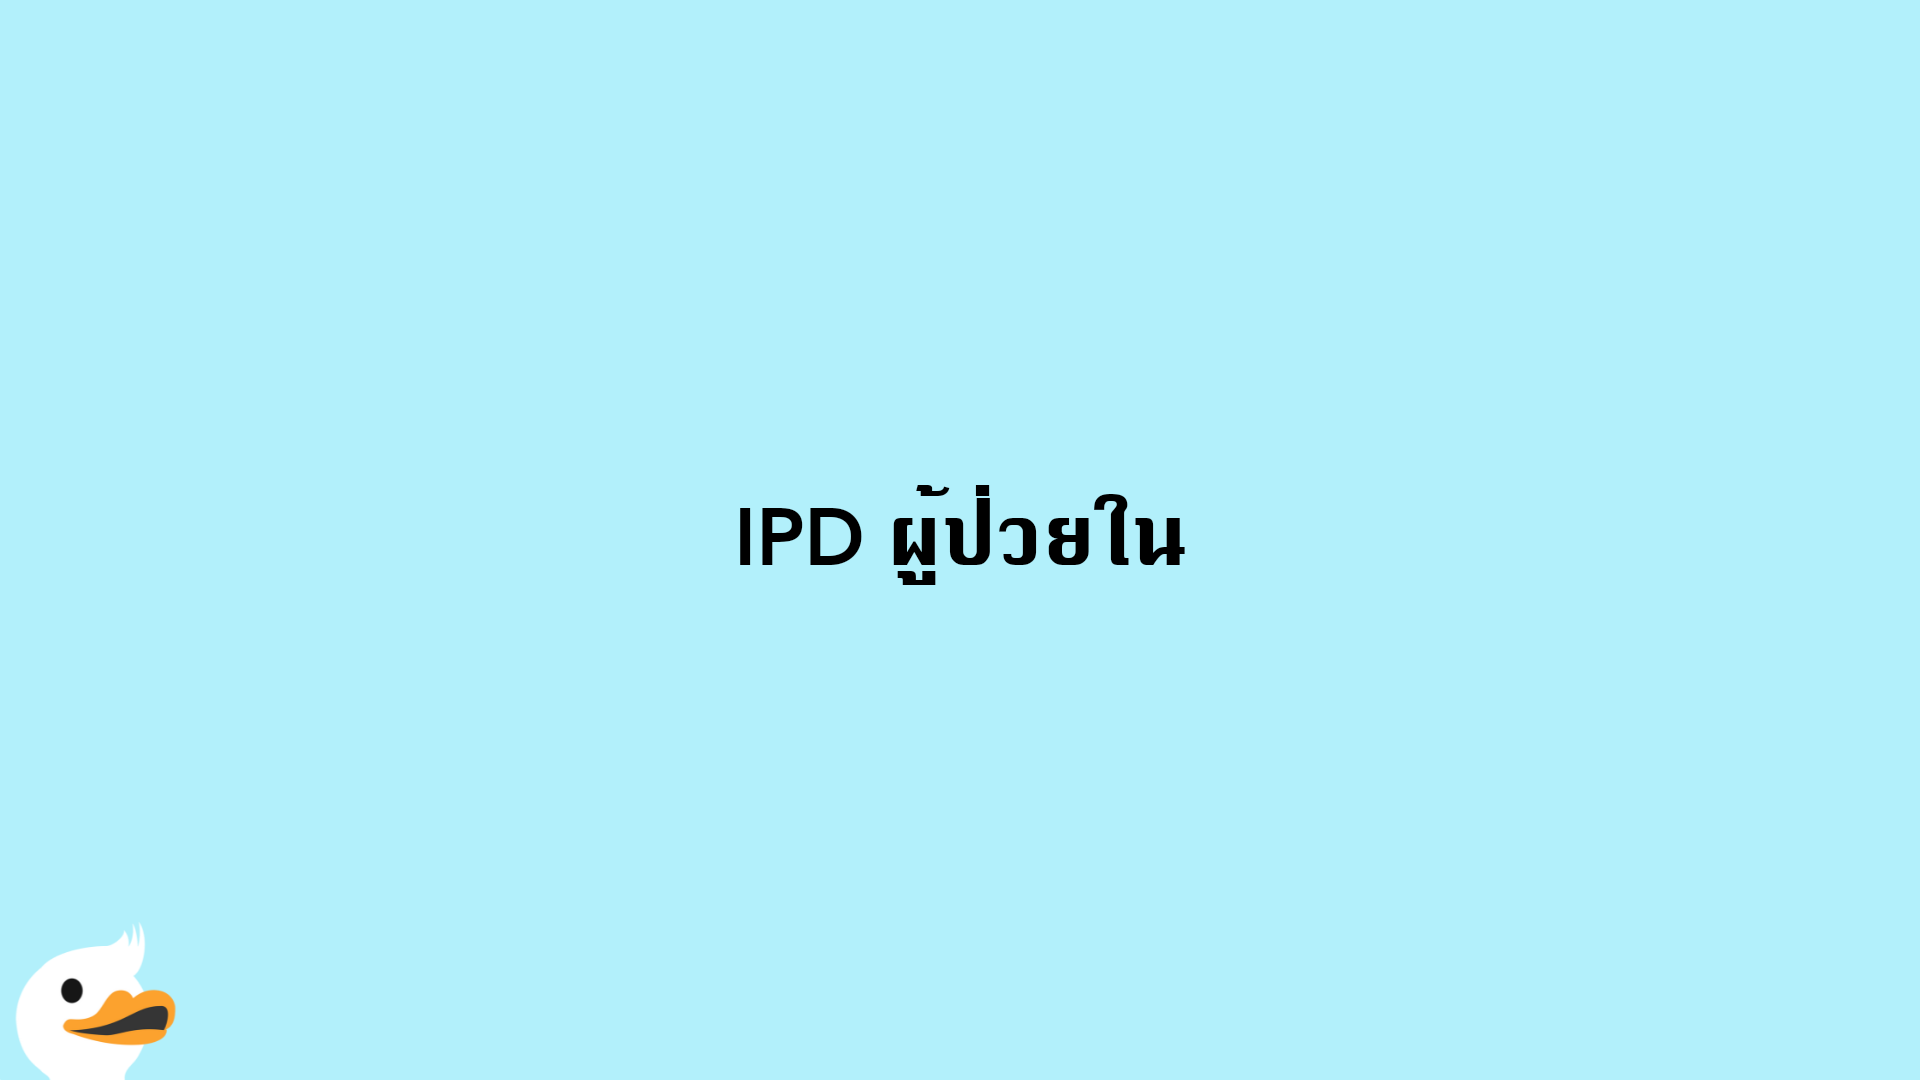 IPD ผู้ป่วยใน